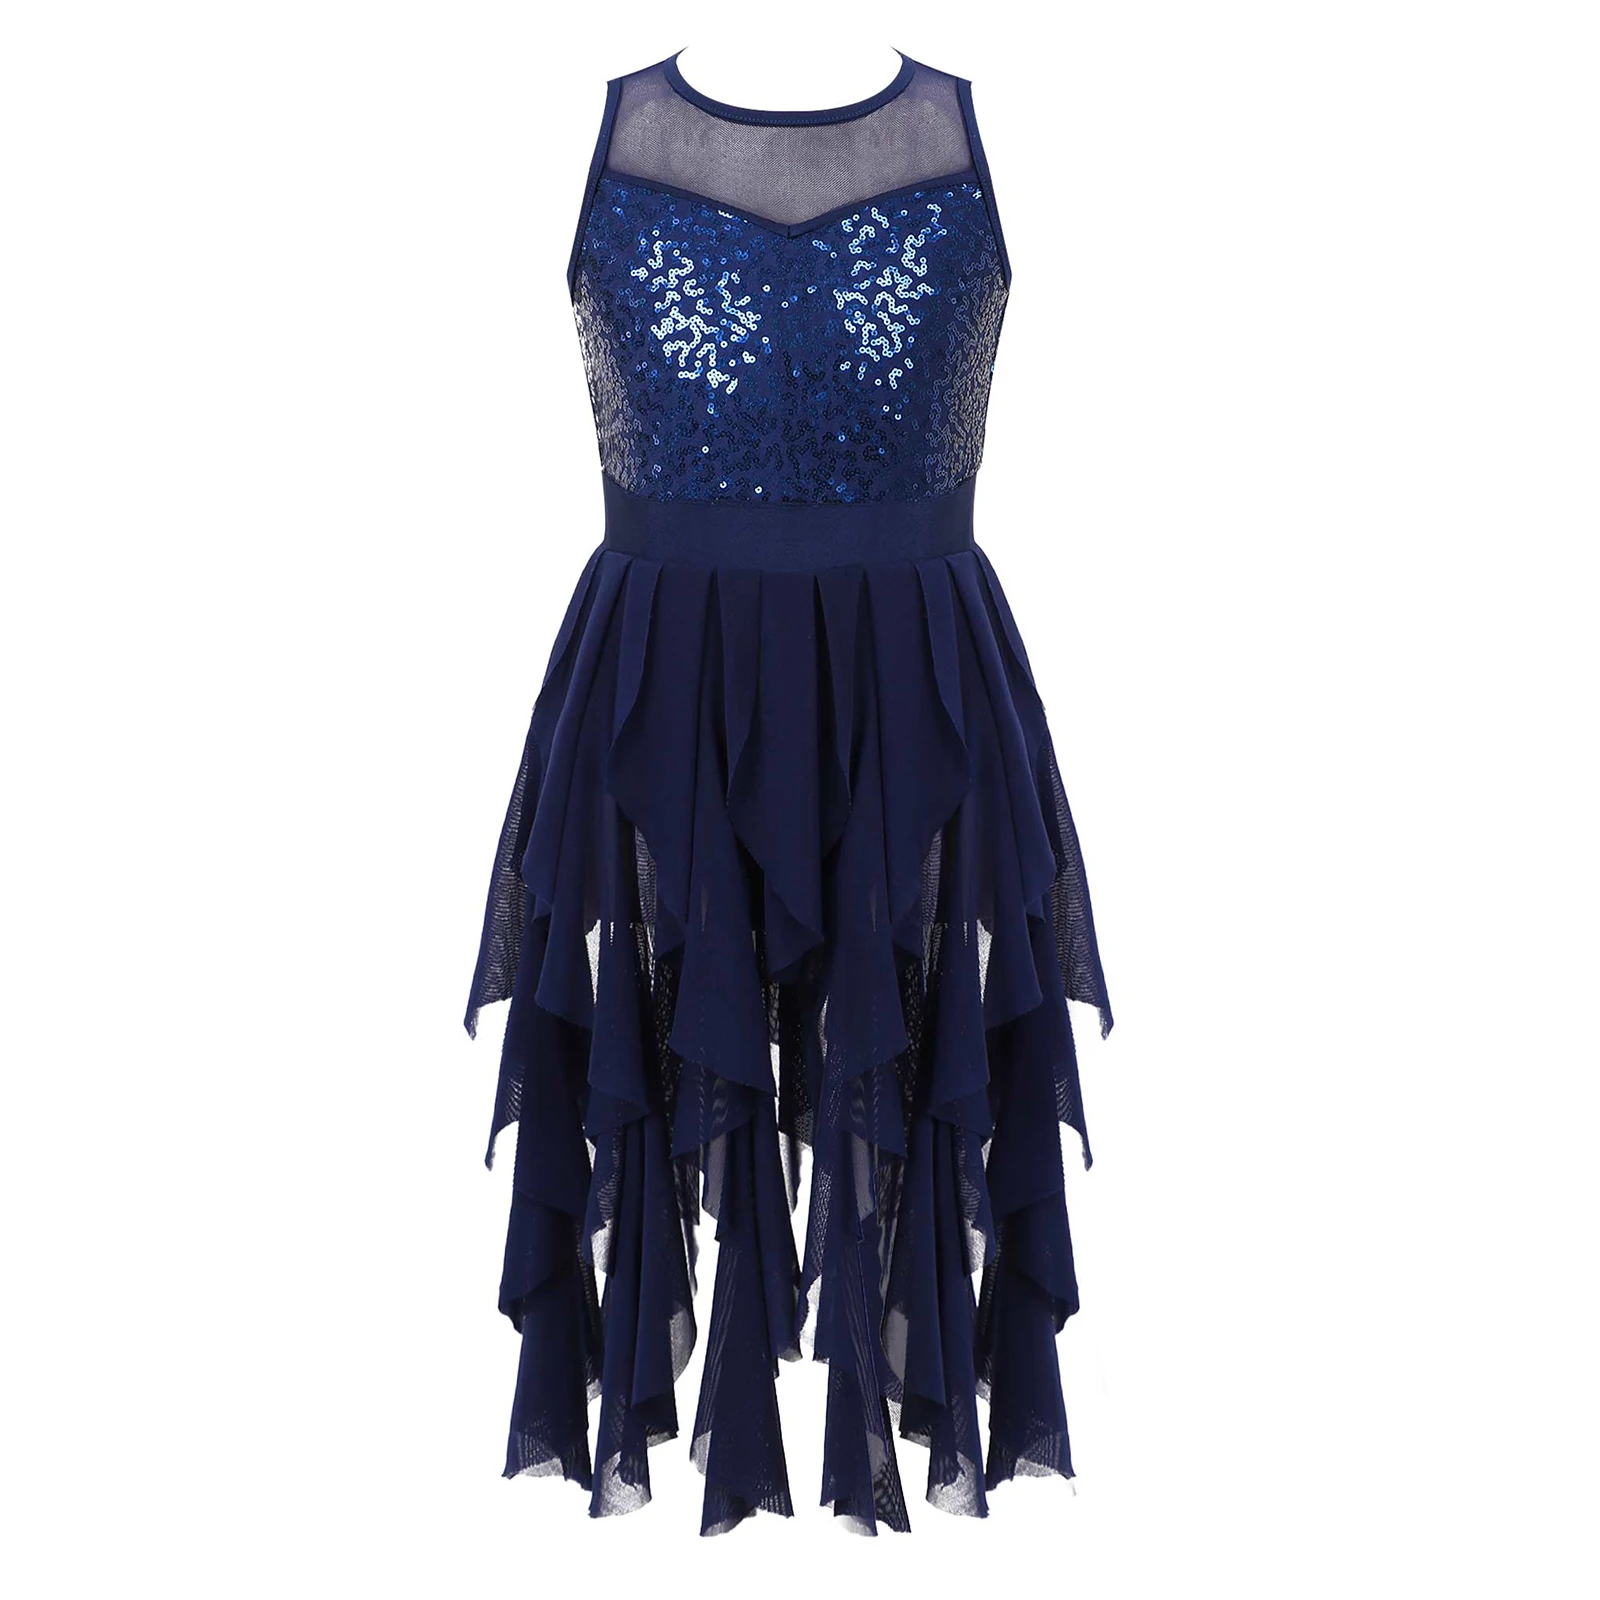 HJ07# Fringe Latin Dance Costume Sleeveless Sequins Ballroom Dress 5 Colors 